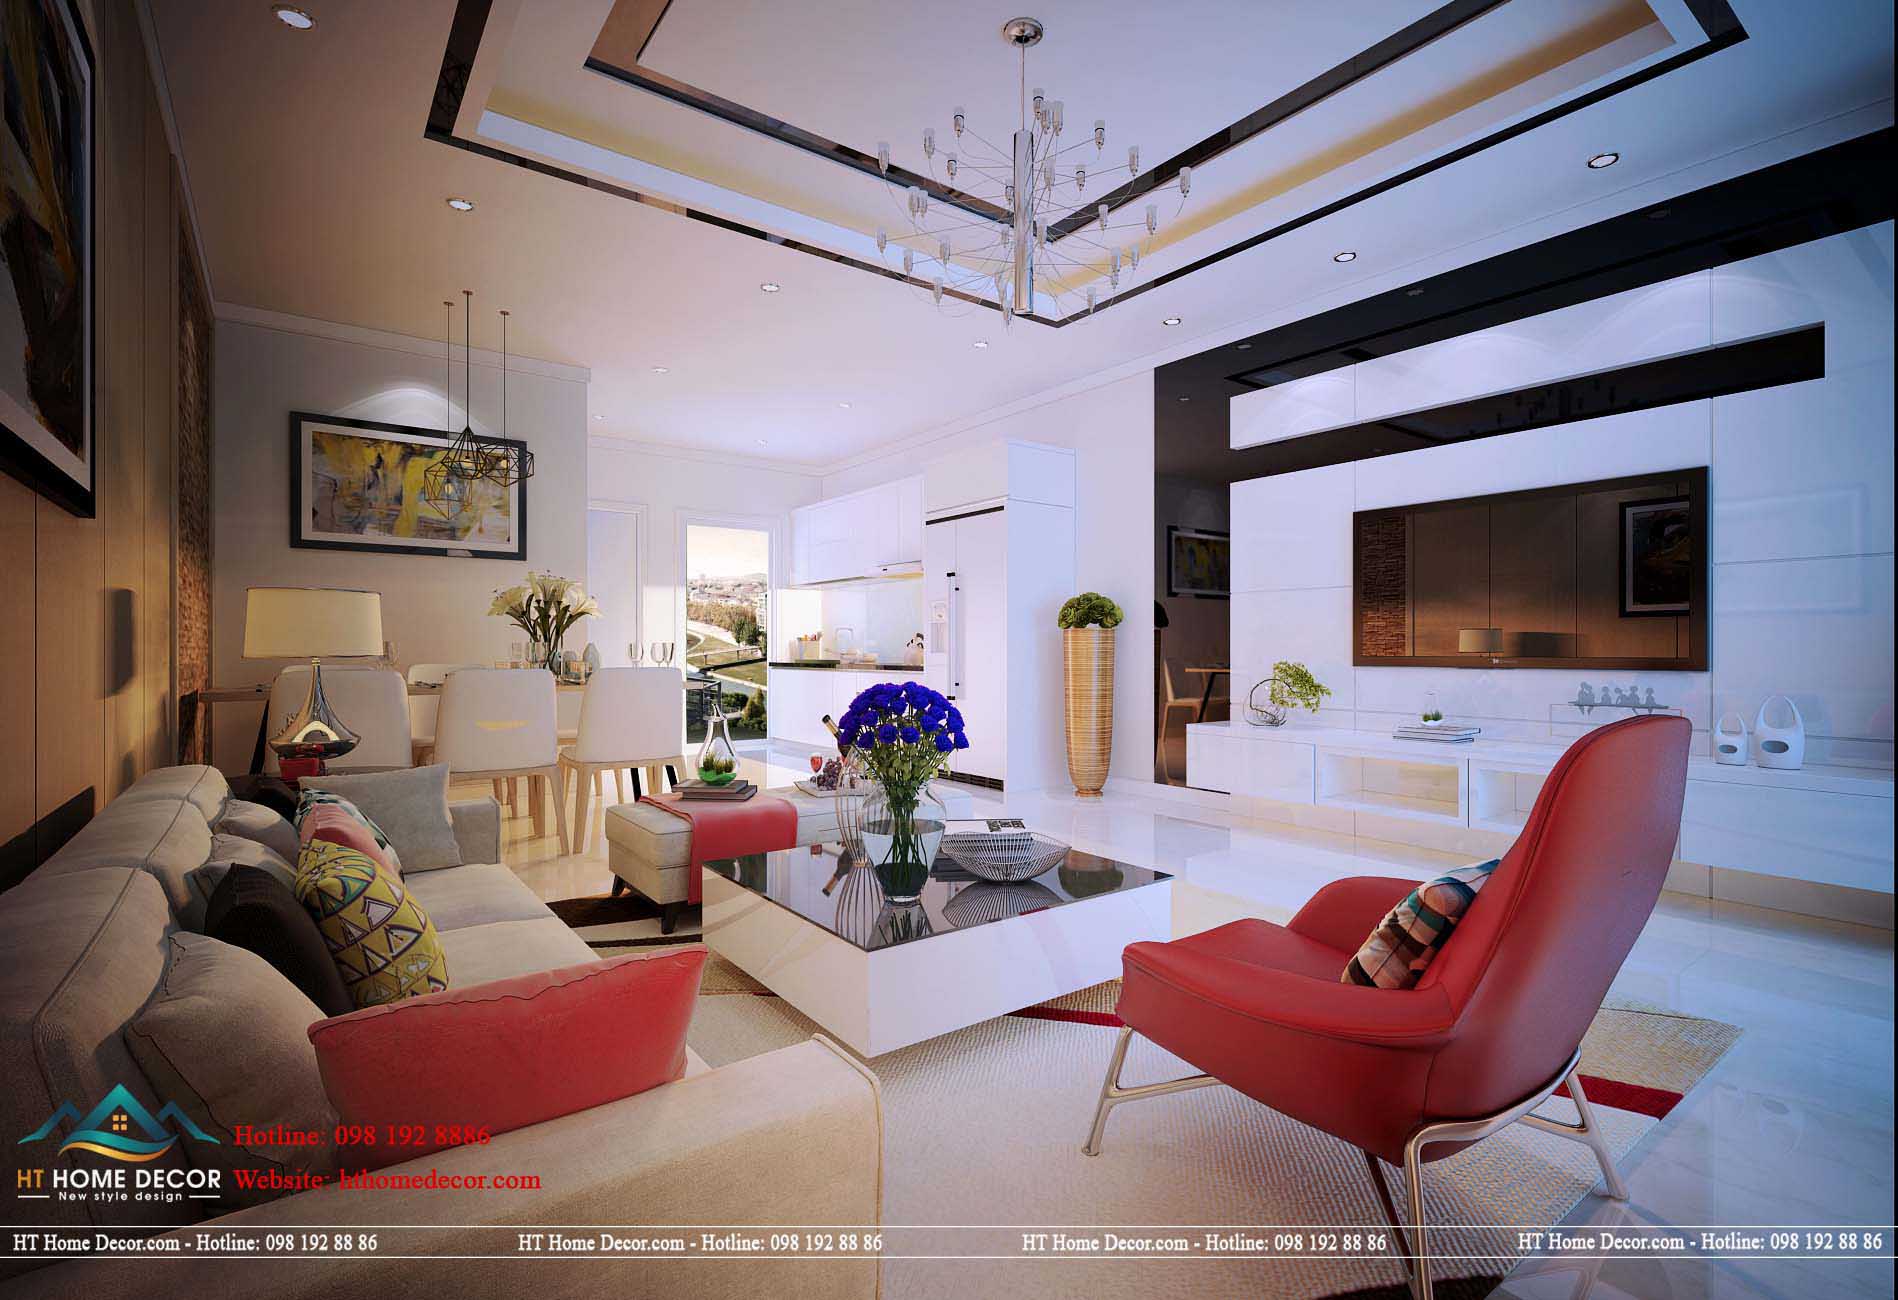 Một bộ ghế sofa dài với nhiều chiếc gối màu sắc nổi bật. Tôn lên vẻ đẹp riêng cho chung cư hoành tráng như thế này.